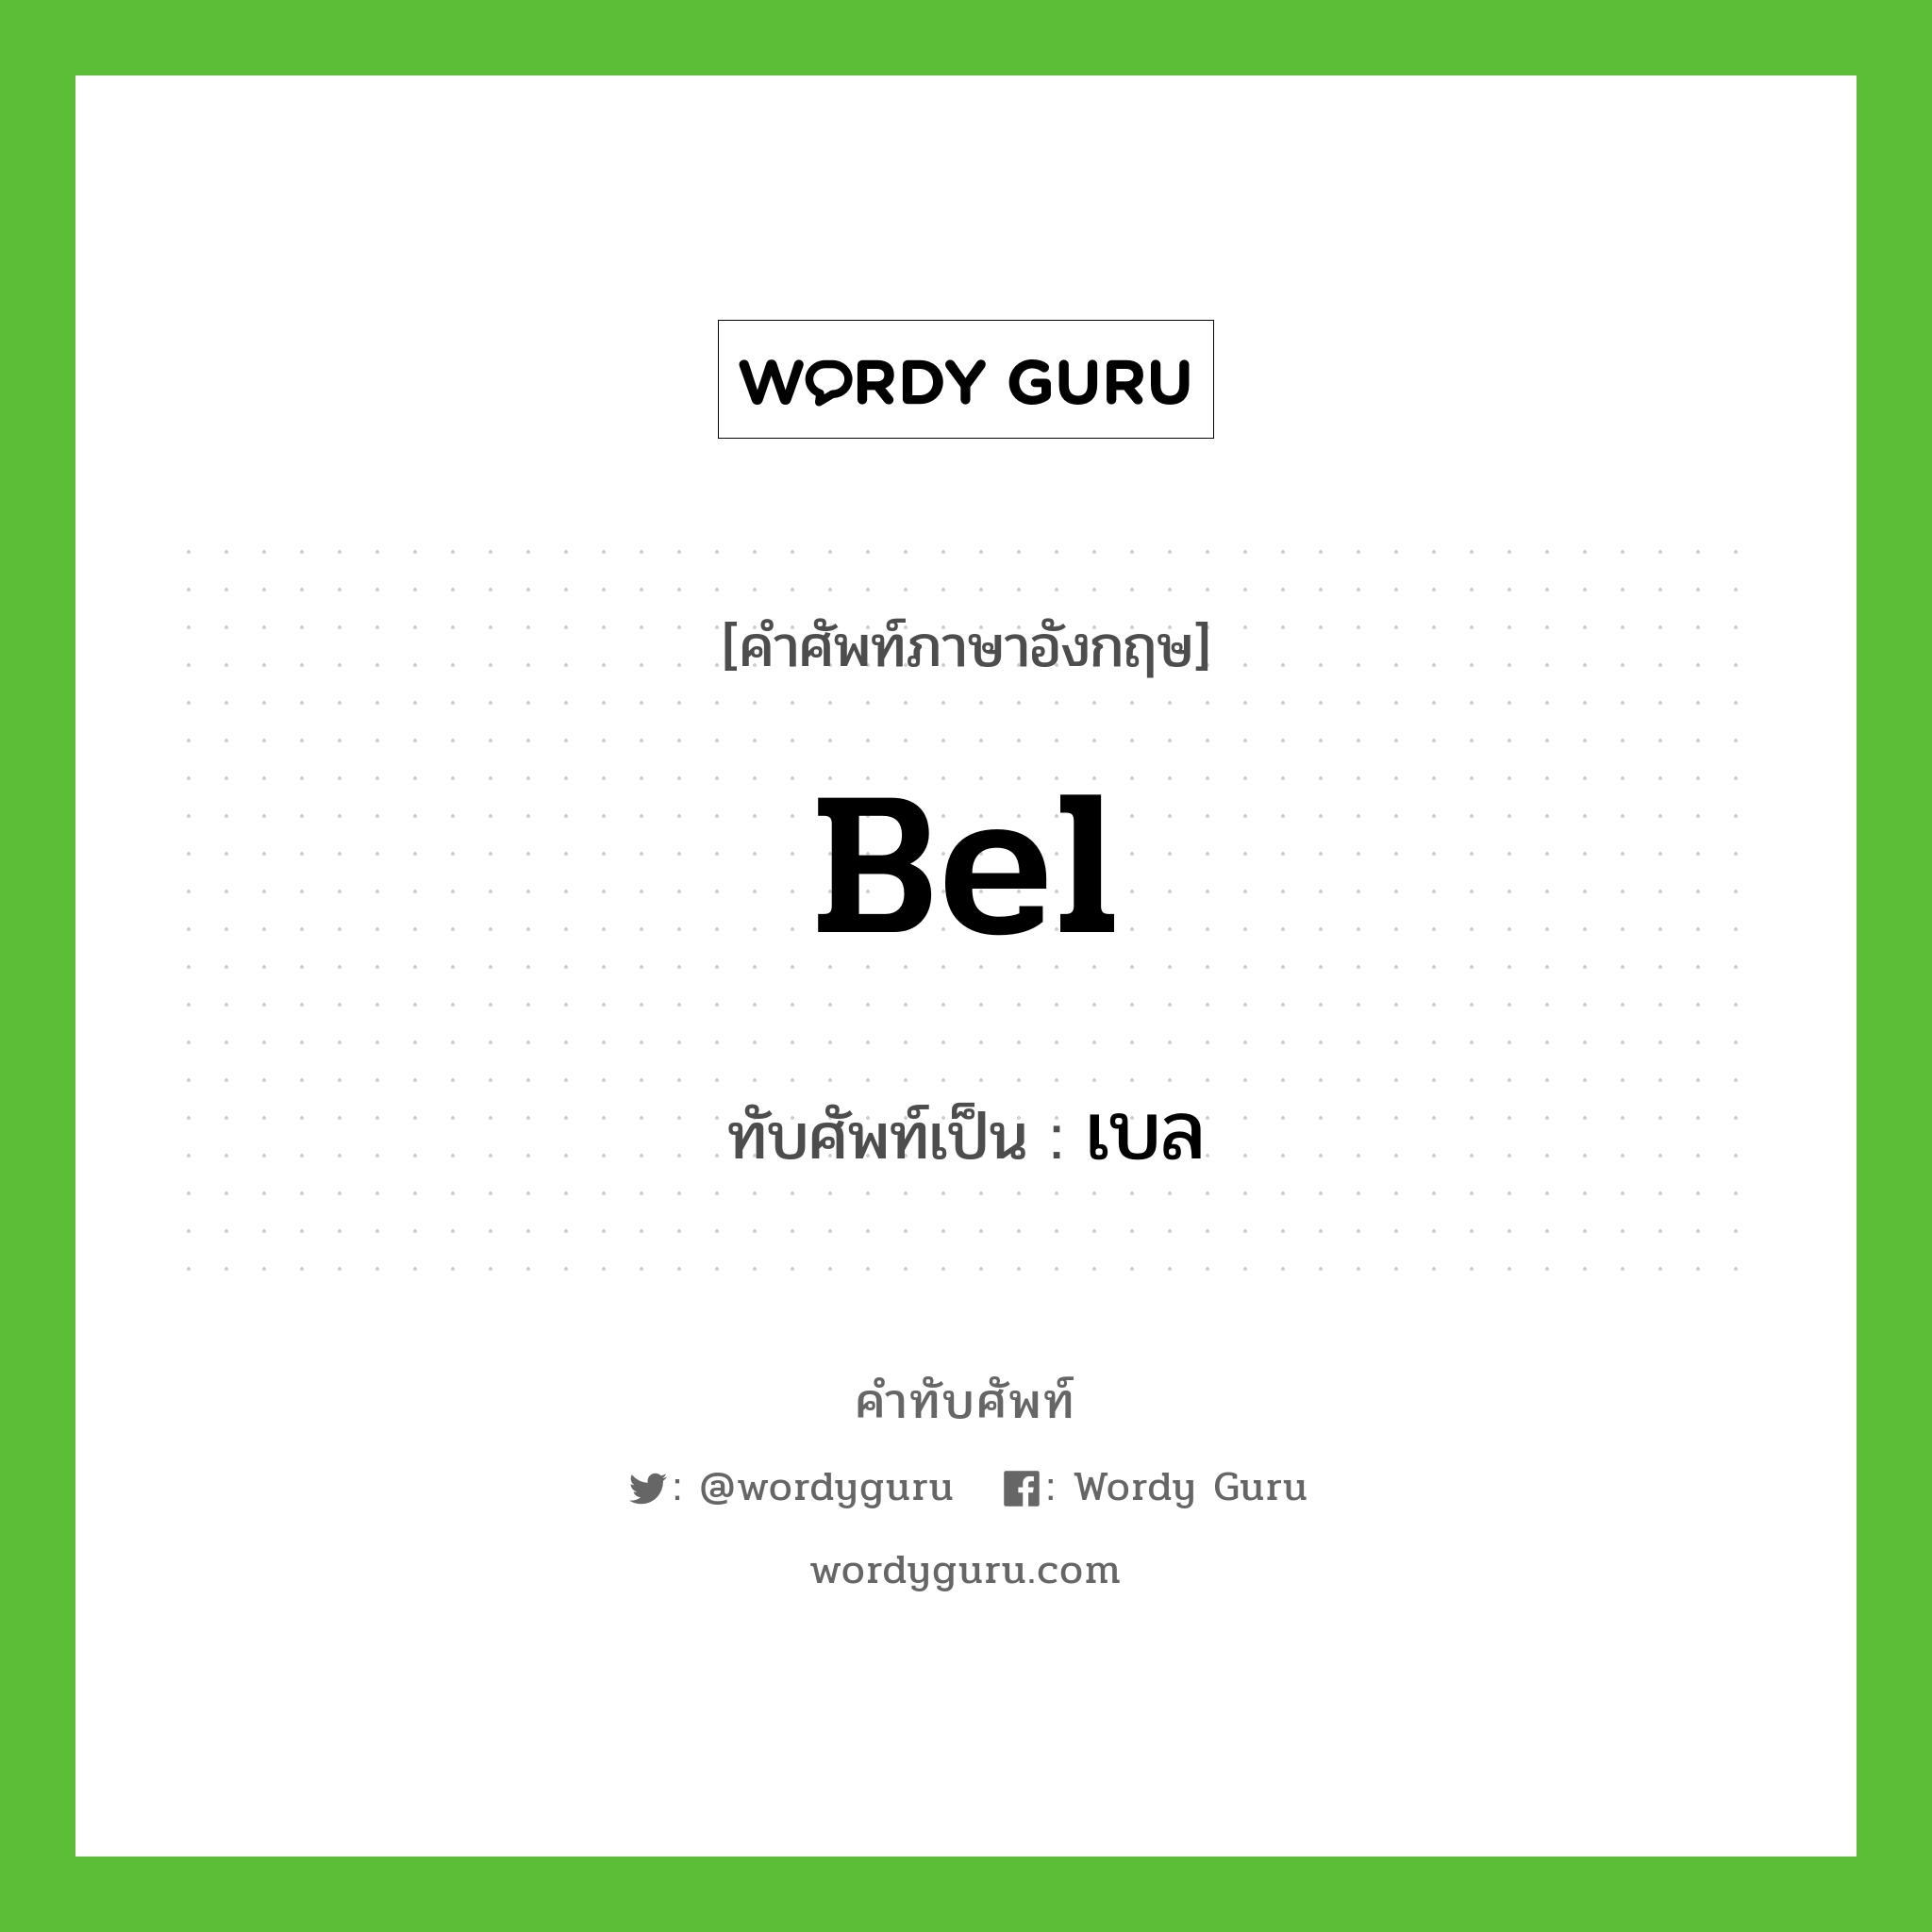 bel เขียนเป็นคำไทยว่าอะไร?, คำศัพท์ภาษาอังกฤษ bel ทับศัพท์เป็น เบล